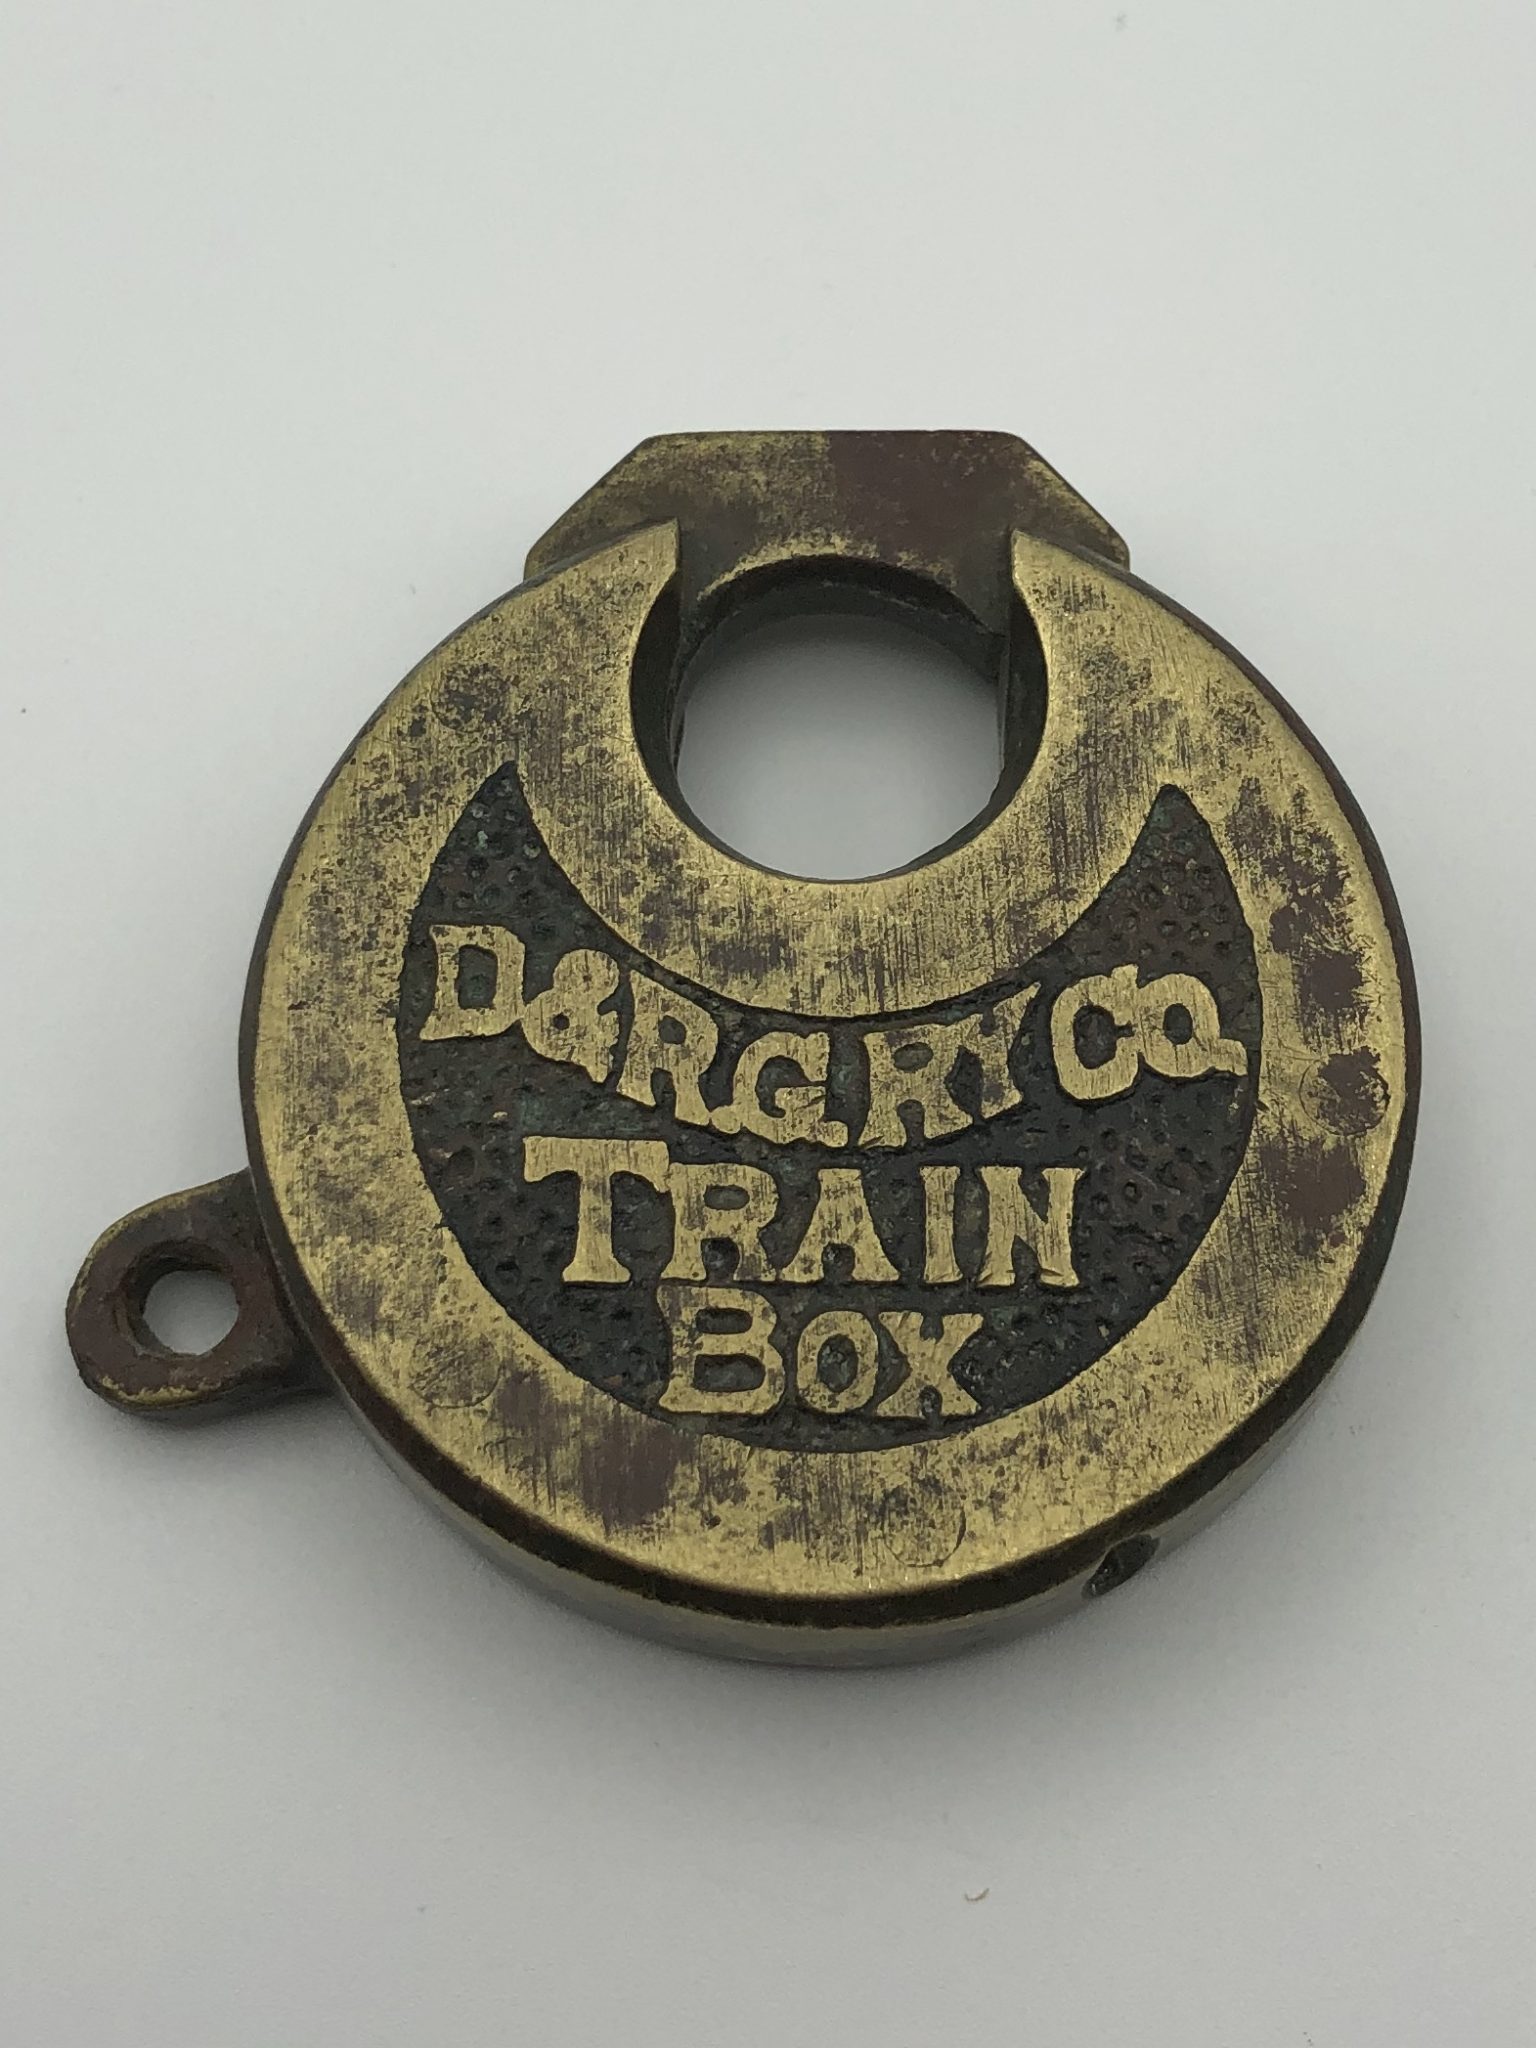 D&RGRY Railroad Train Box Lock